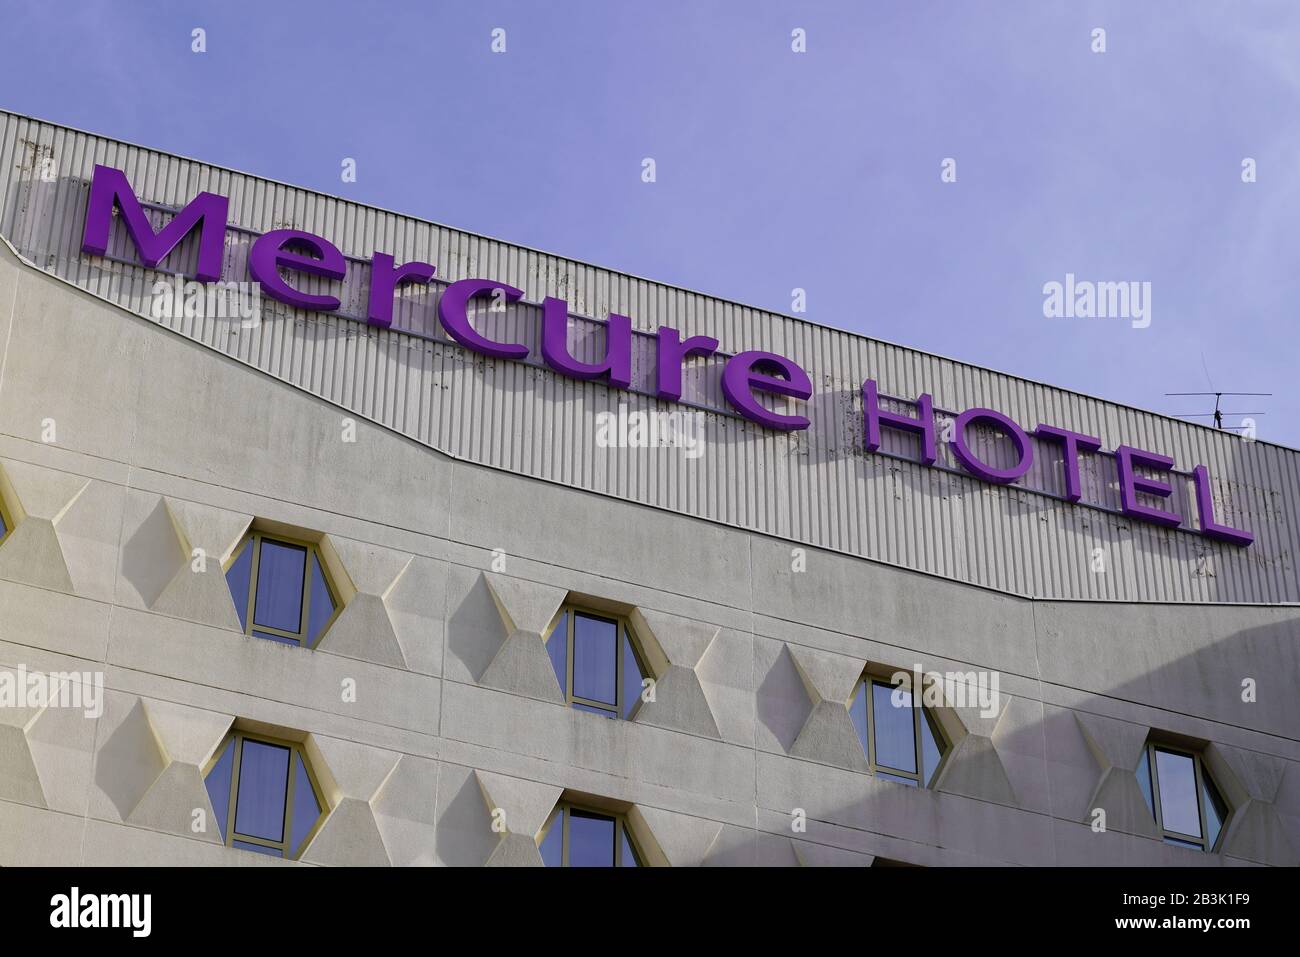 Bordeaux, Aquitanien/Frankreich - 11 19 2019: mercure Hotel Logo auf Gebäudefassade Stockfoto